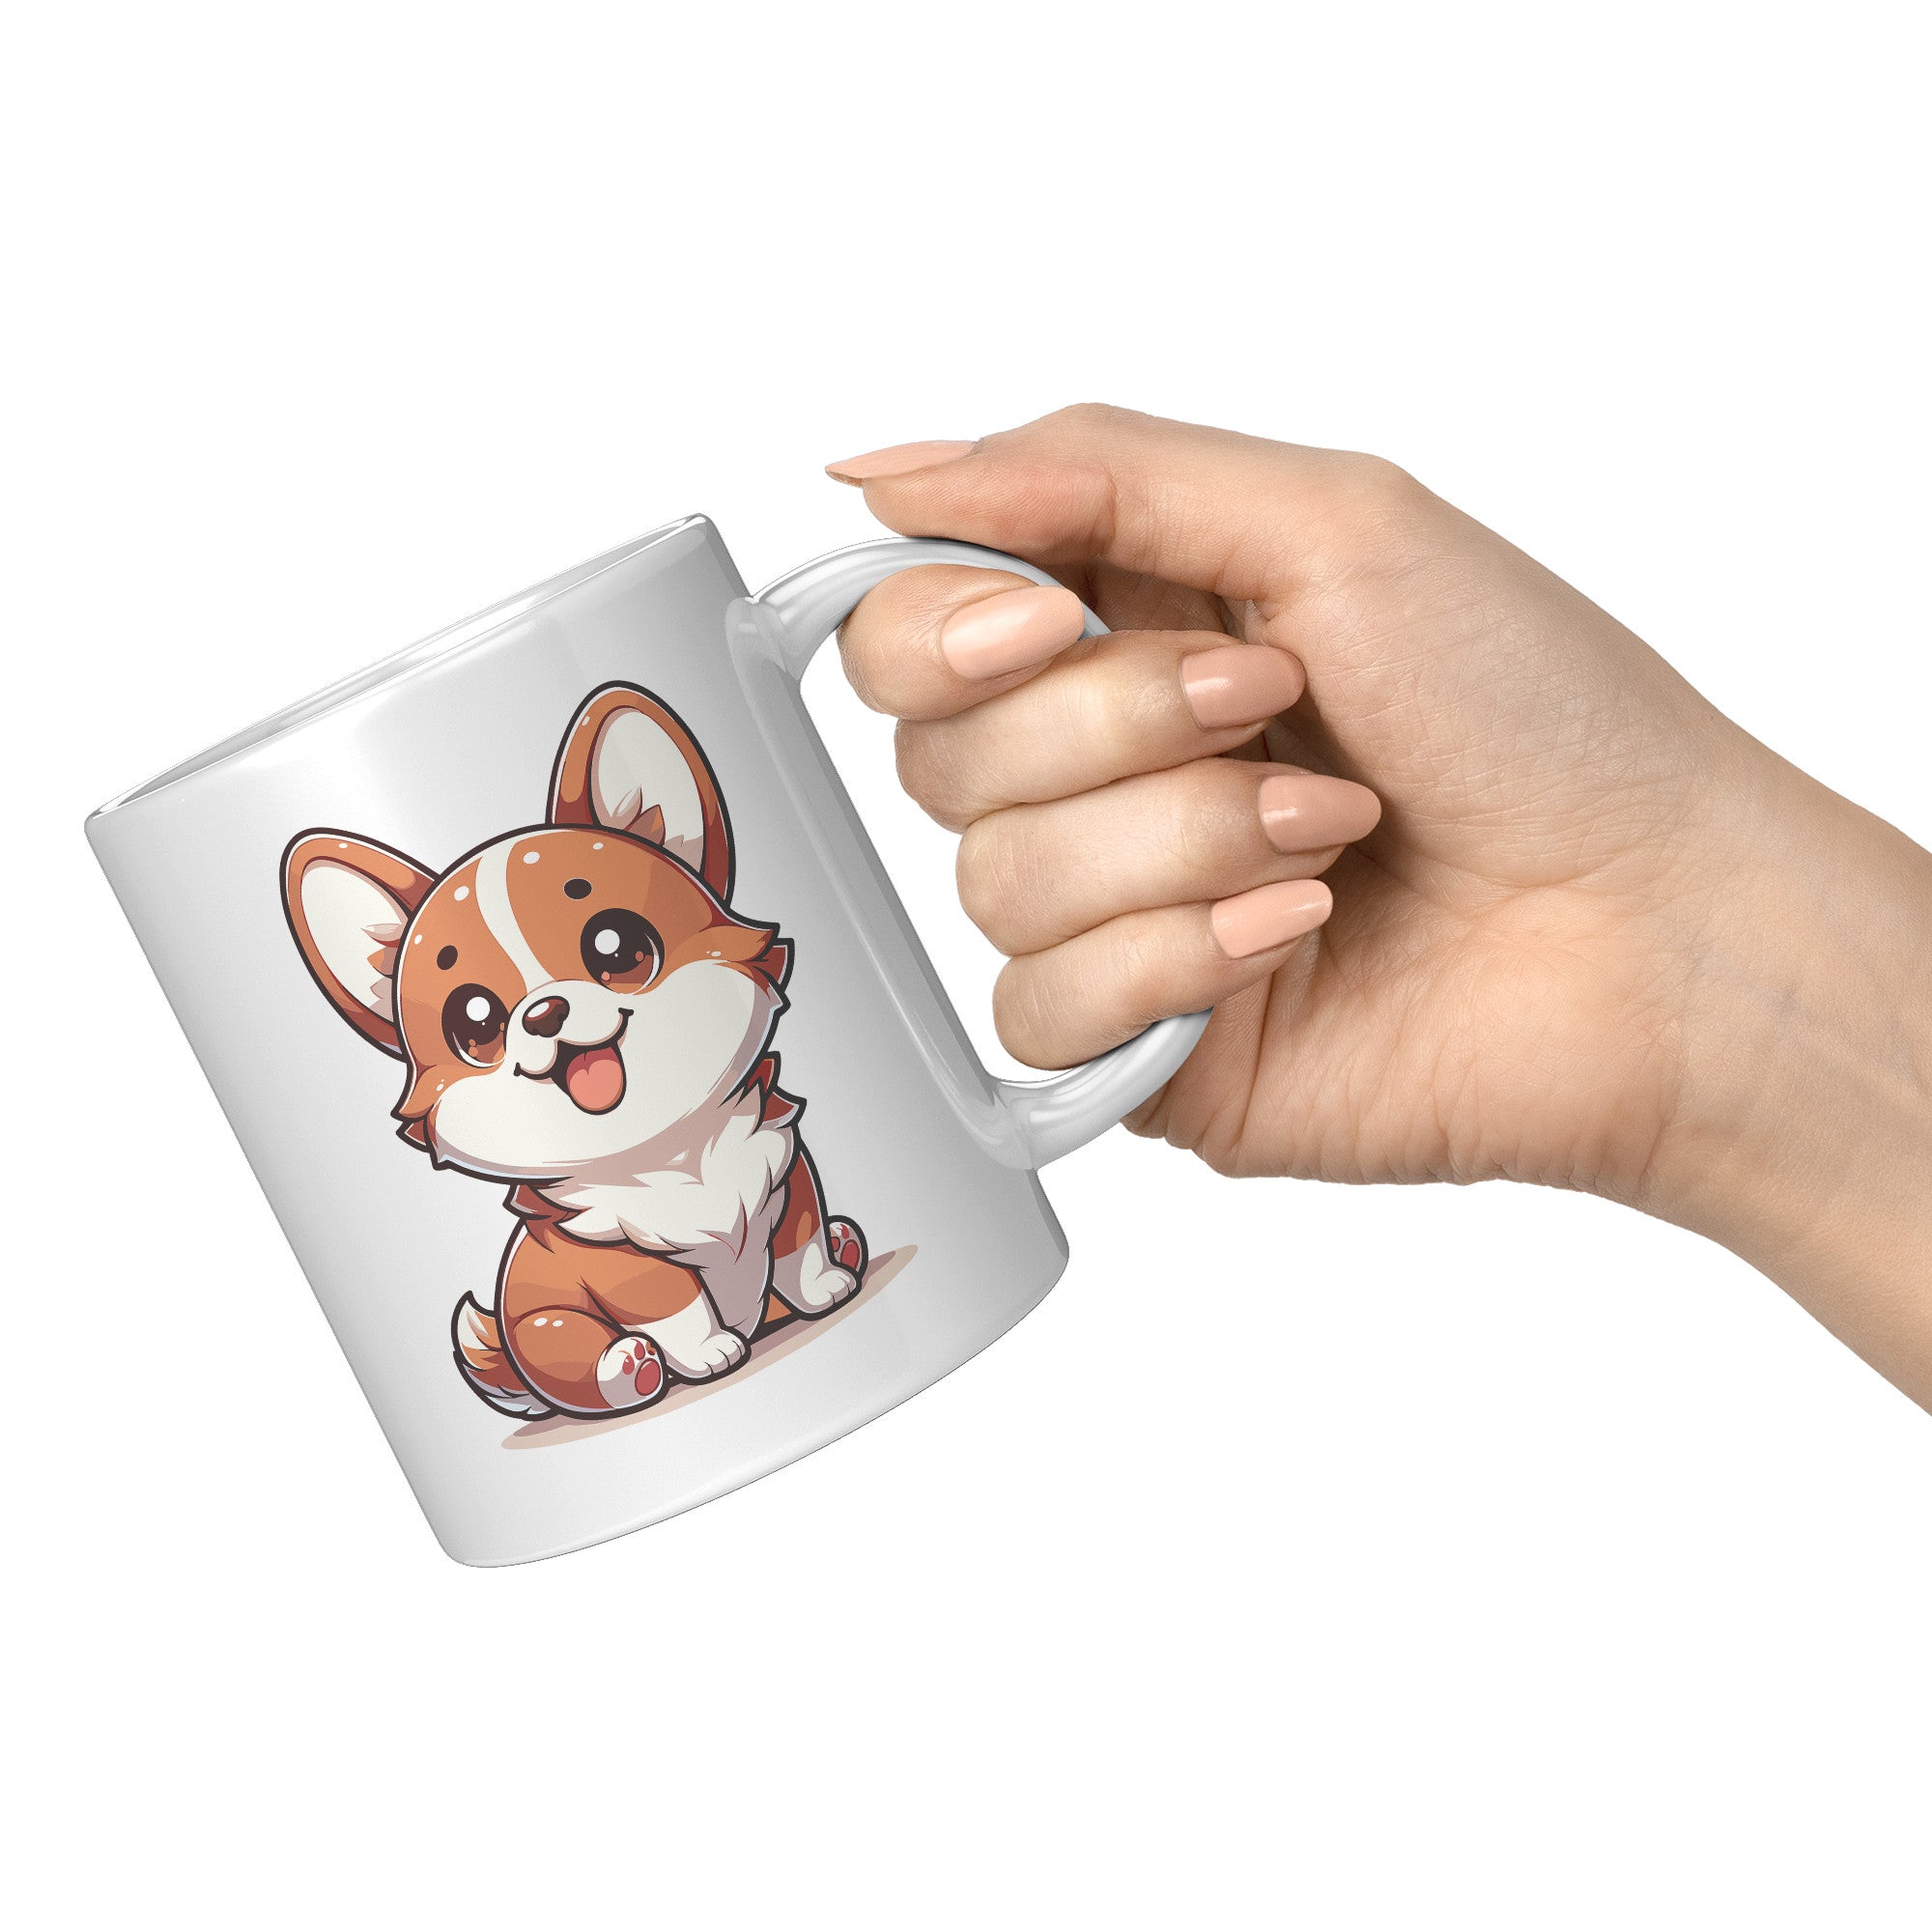 11oz Corgi Lover Cartoon Mug - Adorable Corgi Dog Mug - Perfect Gift for Corgi Owners - Cute Pembroke Welsh Corgi Mug" - E